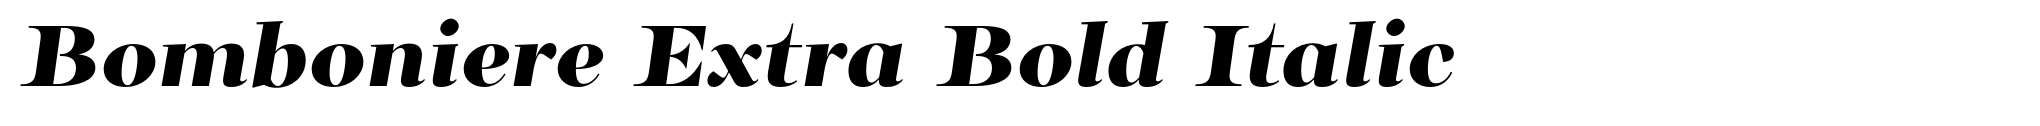 Bomboniere Extra Bold Italic image